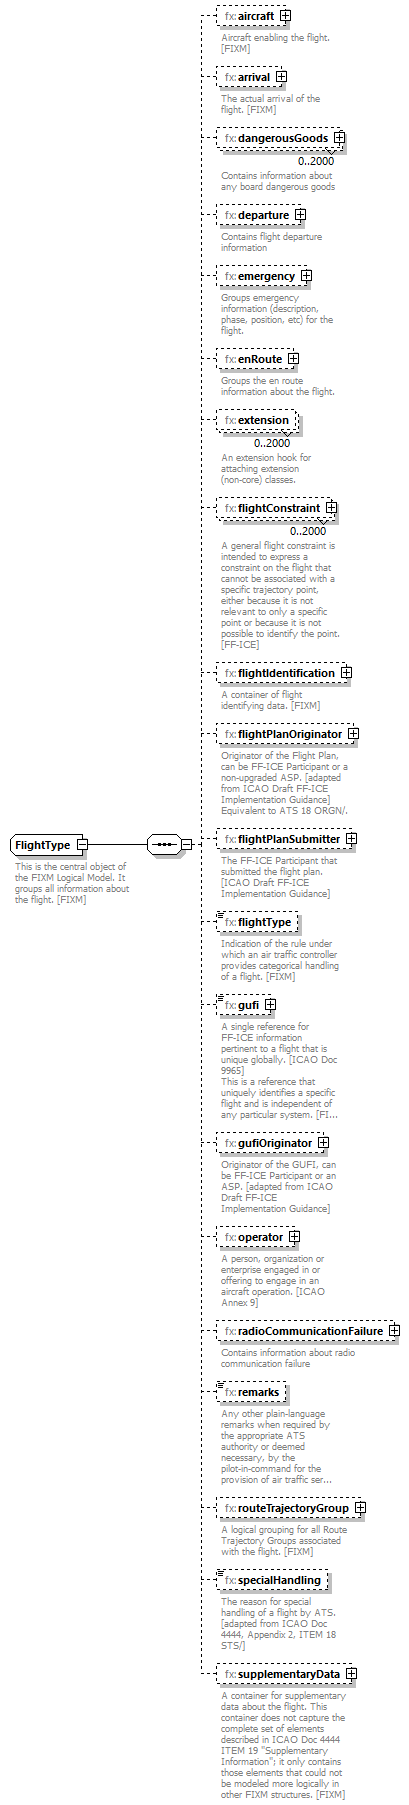 Fixm_diagrams/Fixm_p323.png